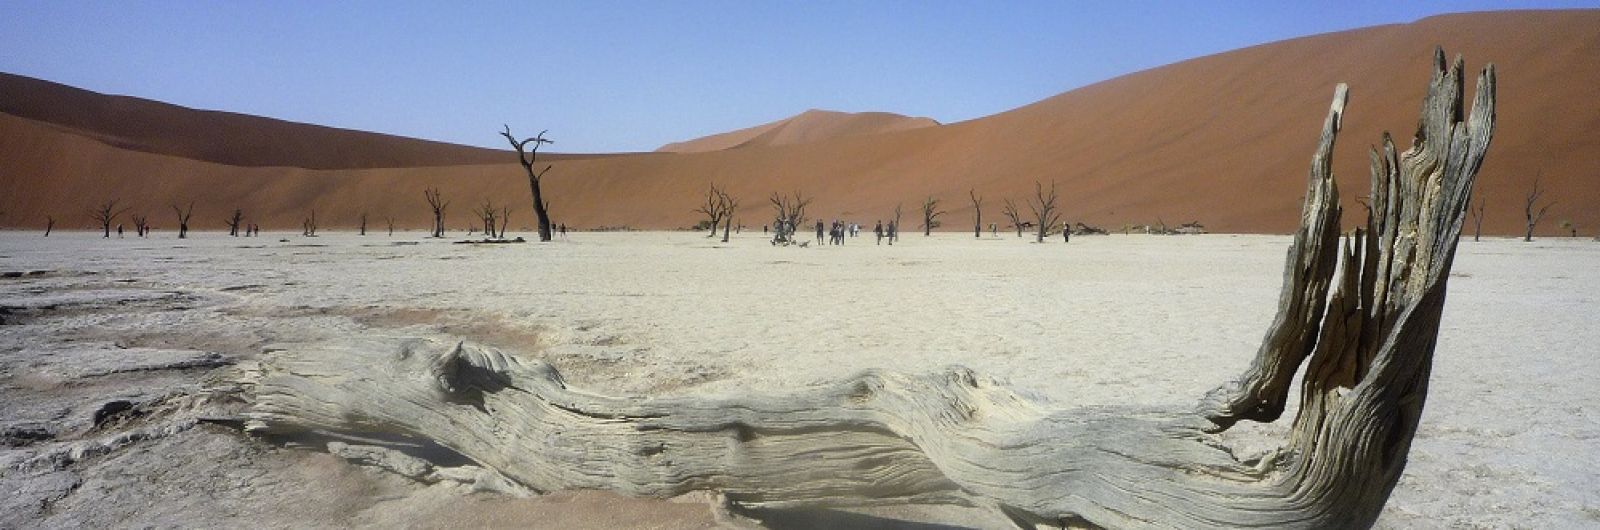 namibia desierto namib